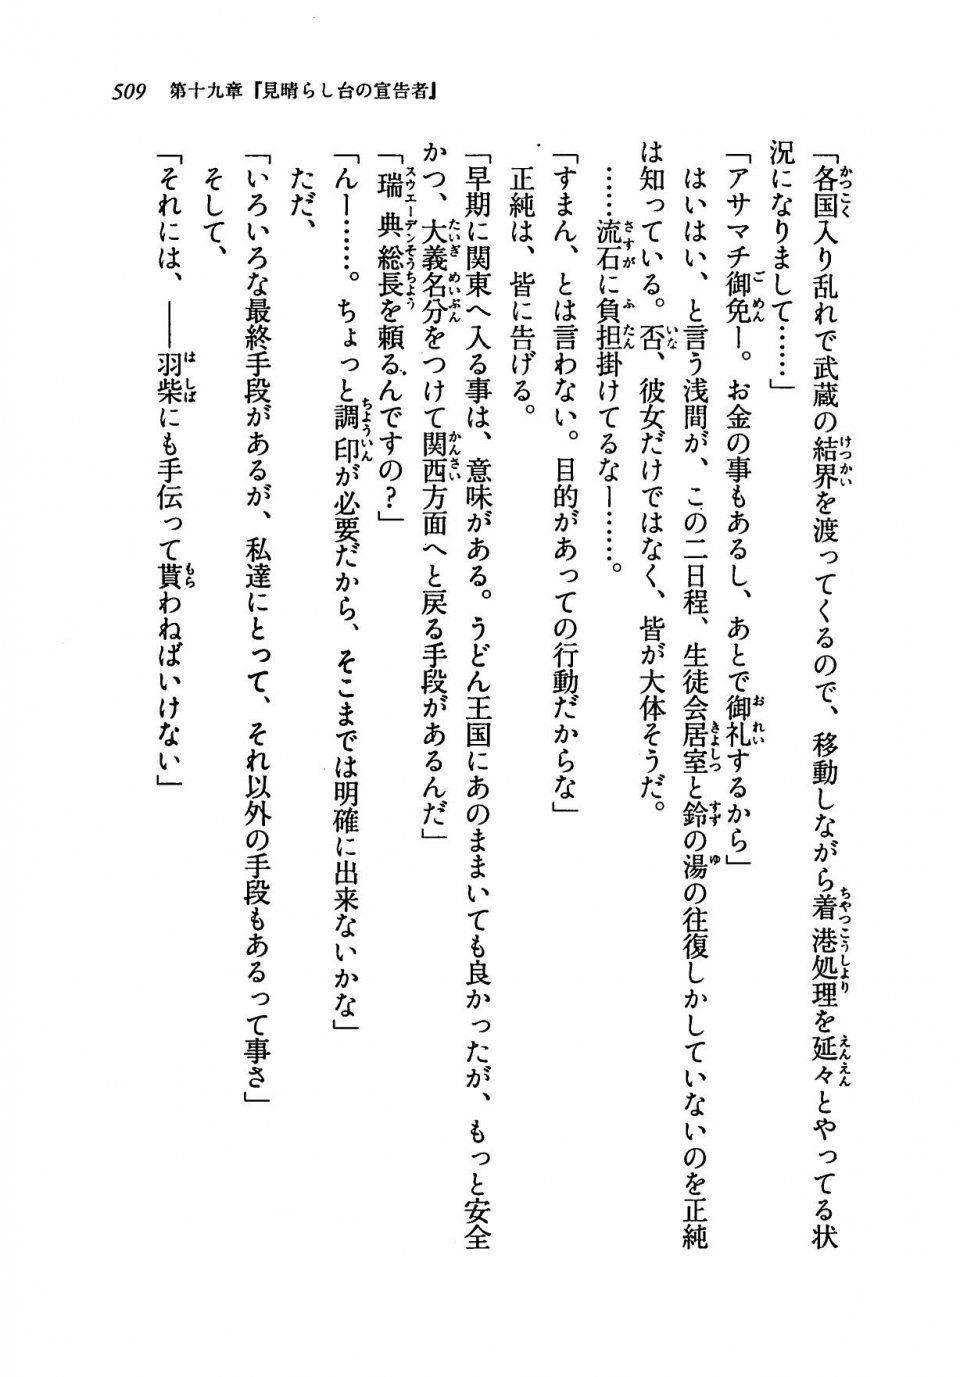 Kyoukai Senjou no Horizon LN Vol 19(8A) - Photo #509